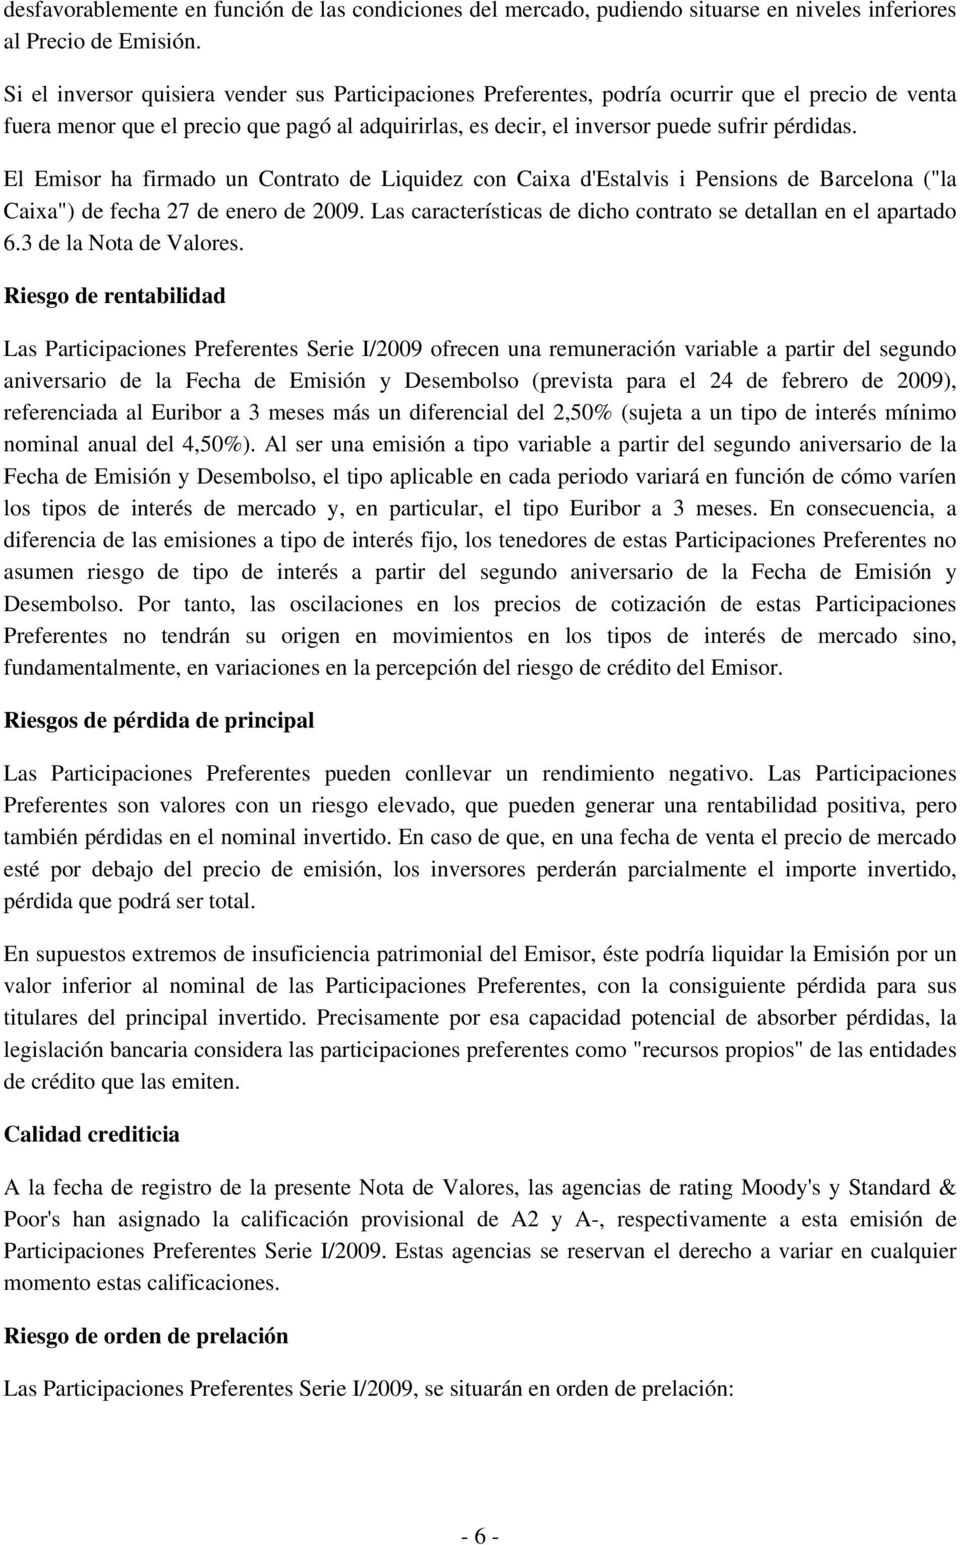 El Emisor ha firmado un Contrato de Liquidez con Caixa d'estalvis i Pensions de Barcelona ("la Caixa") de fecha 27 de enero de 2009. Las características de dicho contrato se detallan en el apartado 6.